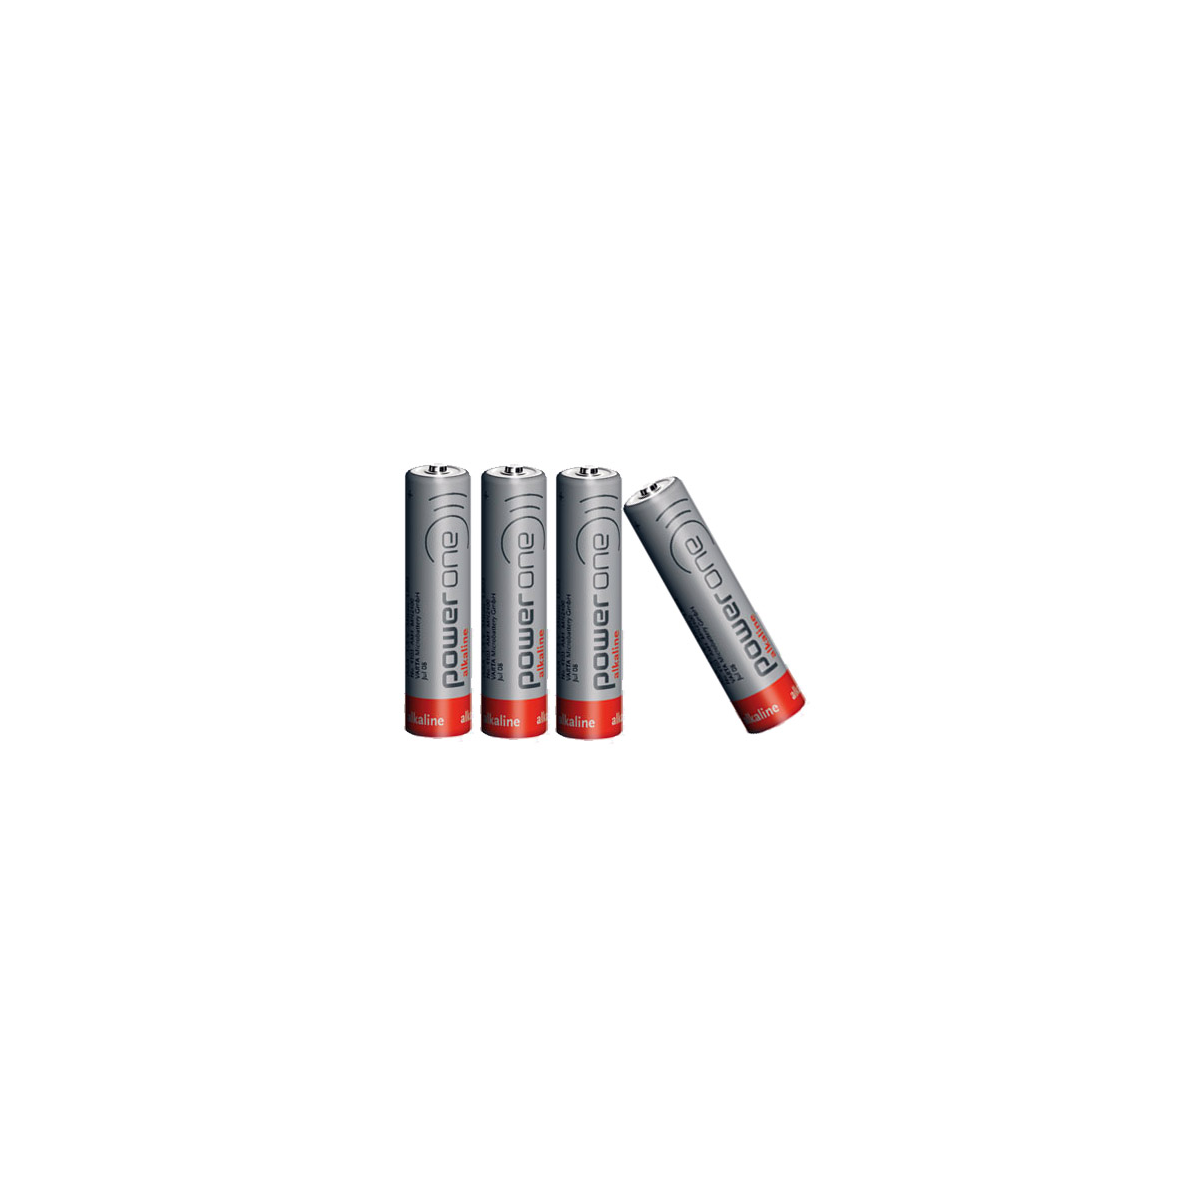 Fournitures générales > Piles et batteries > Piles Lithium AAA L92